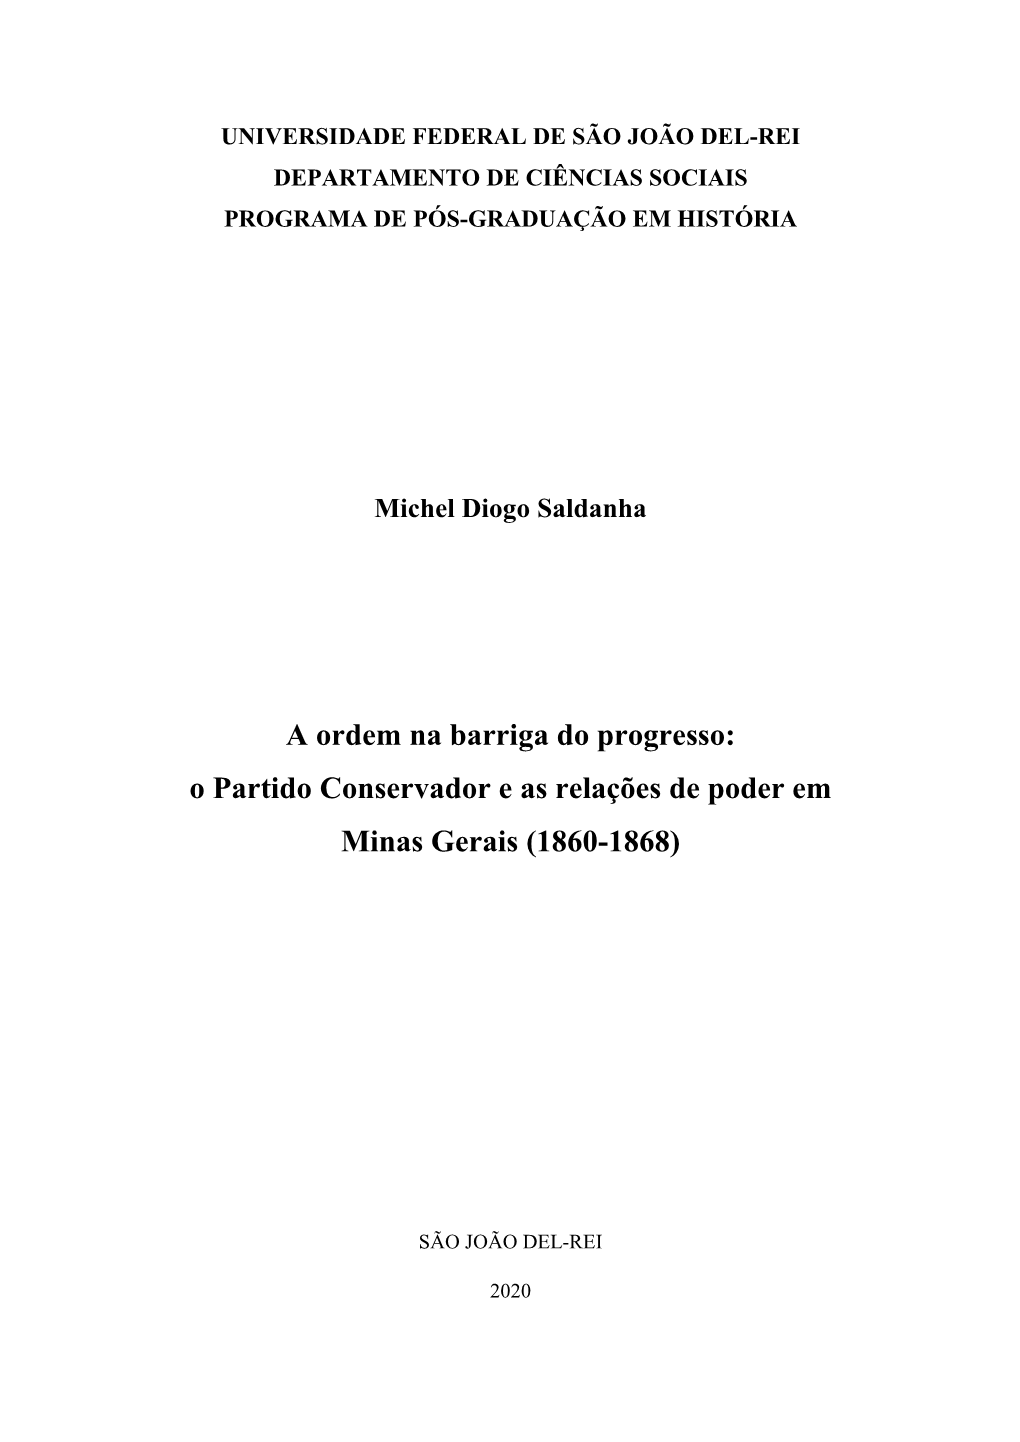 O Partido Conservador E As Relações De Poder Em Minas Gerais (1860-1868)